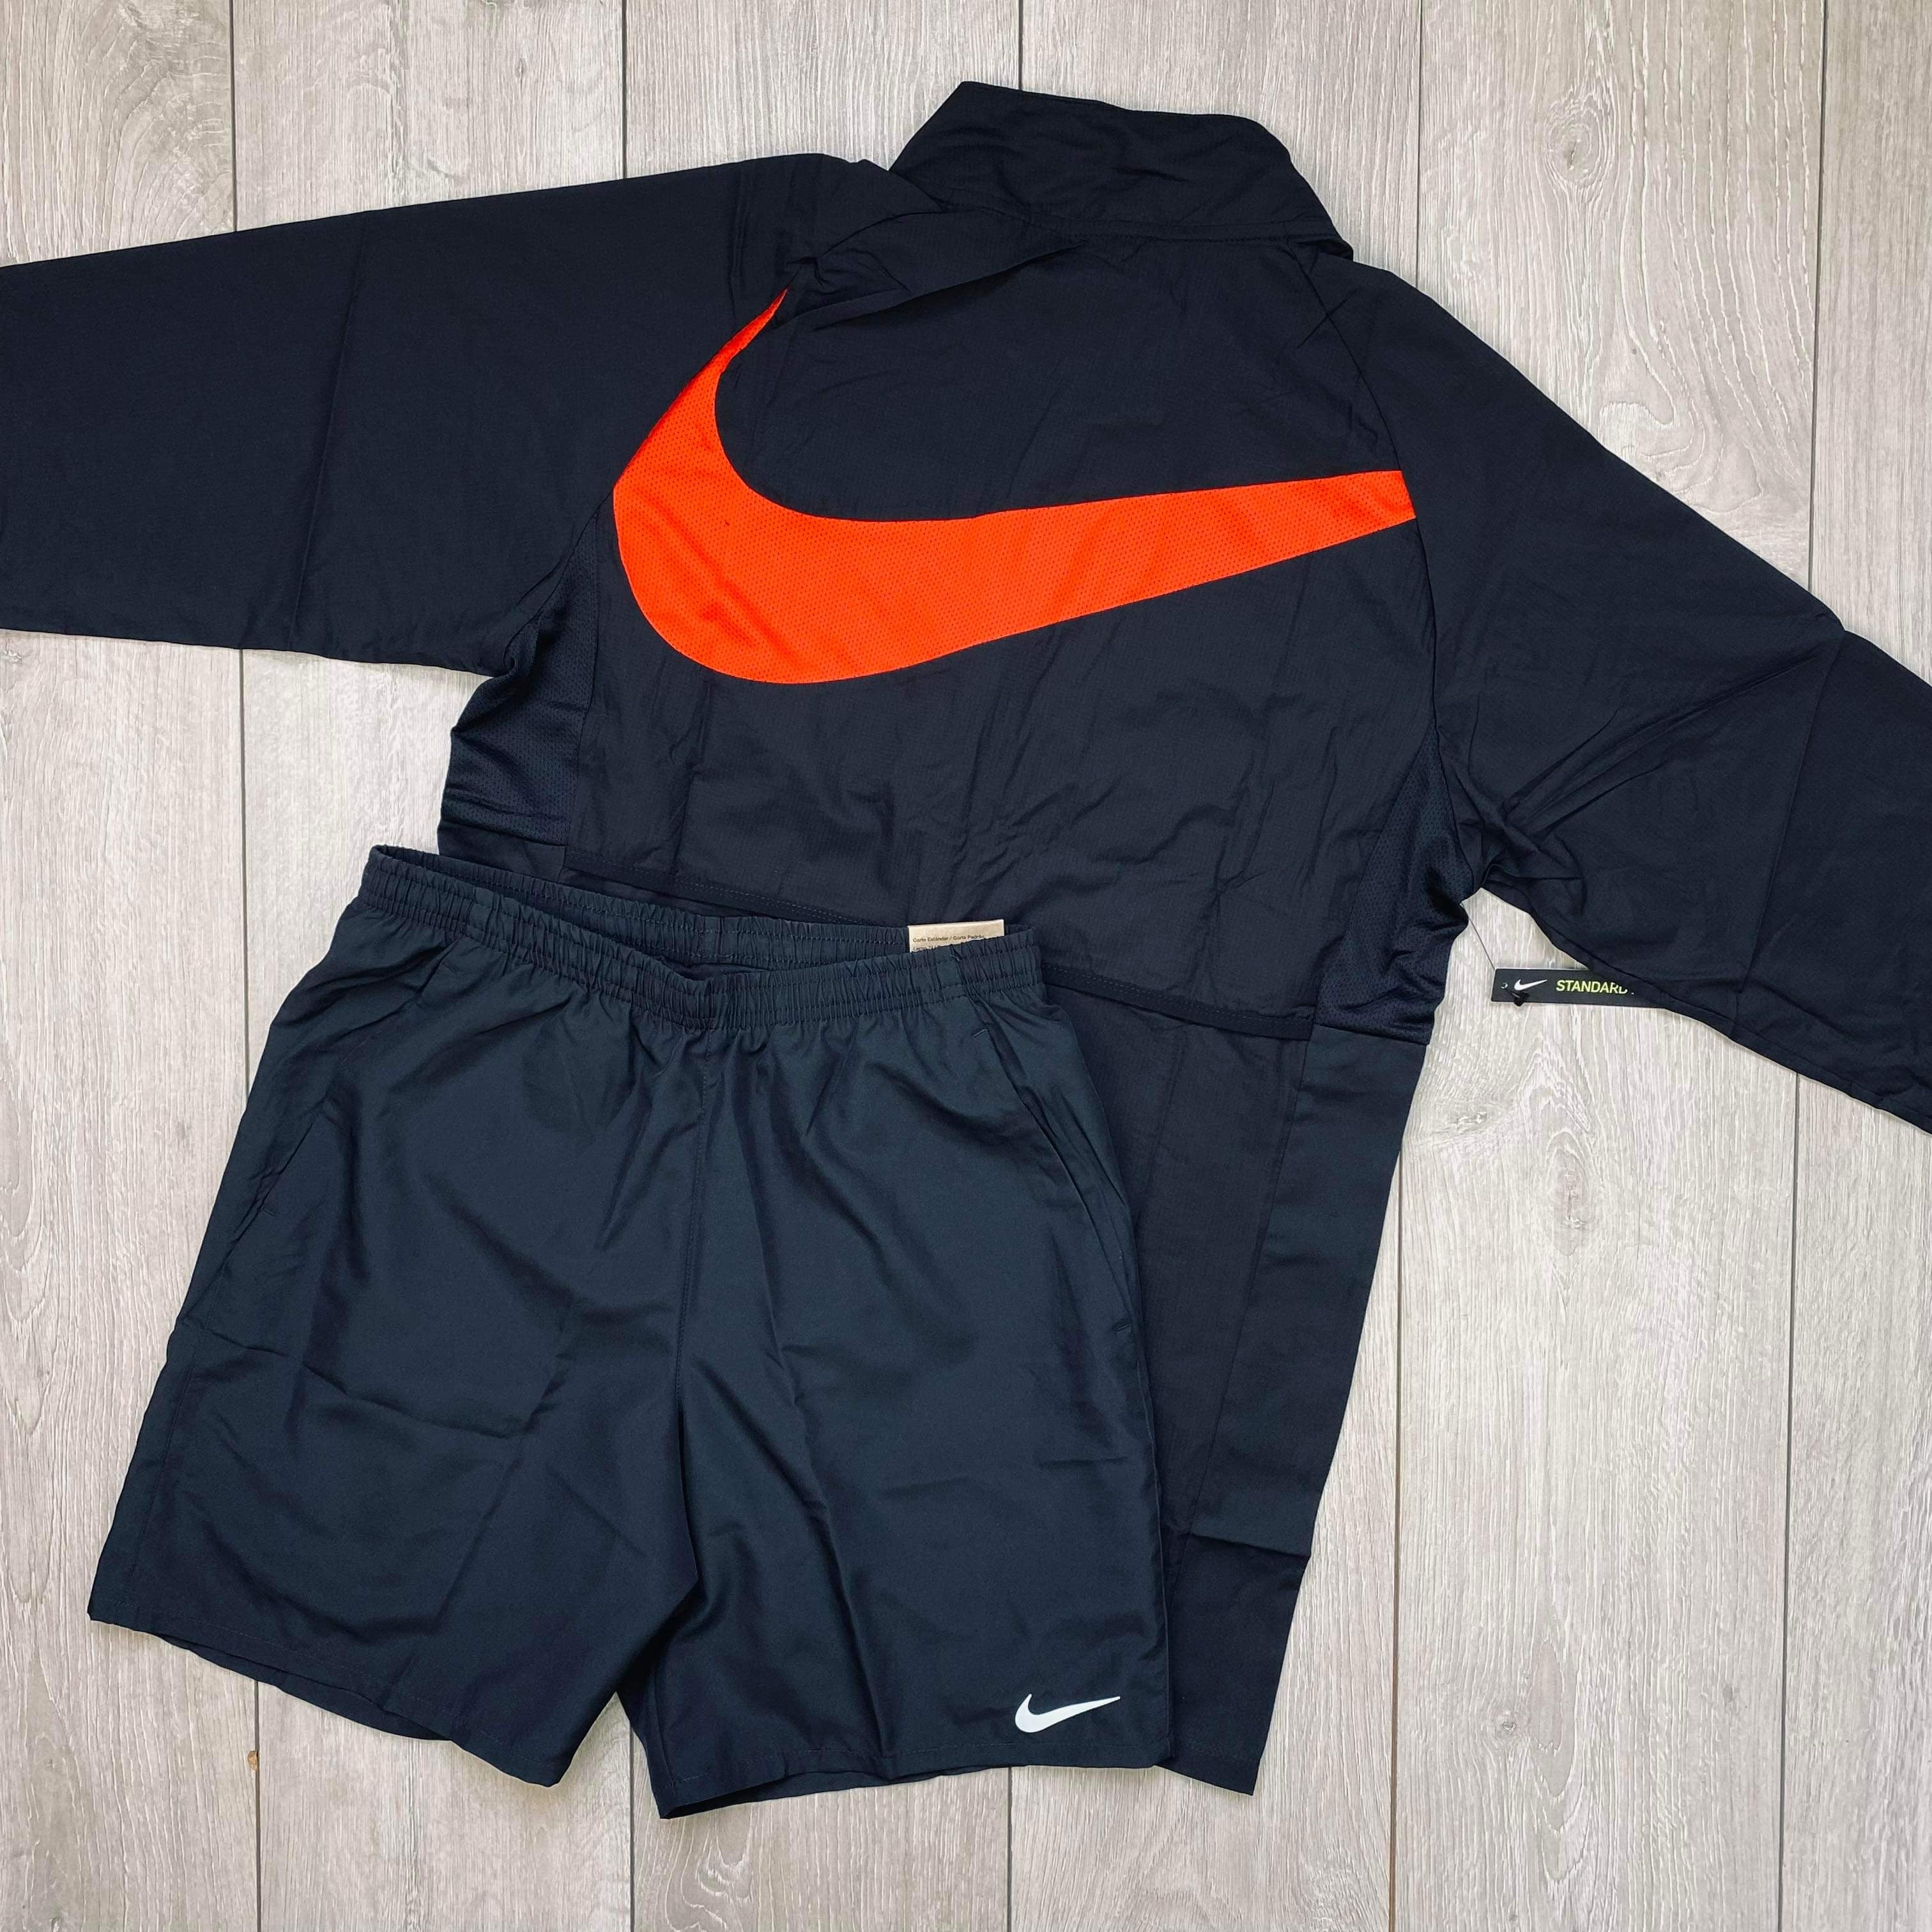 Nike Swoosh Jacket & Shorts Set - Black